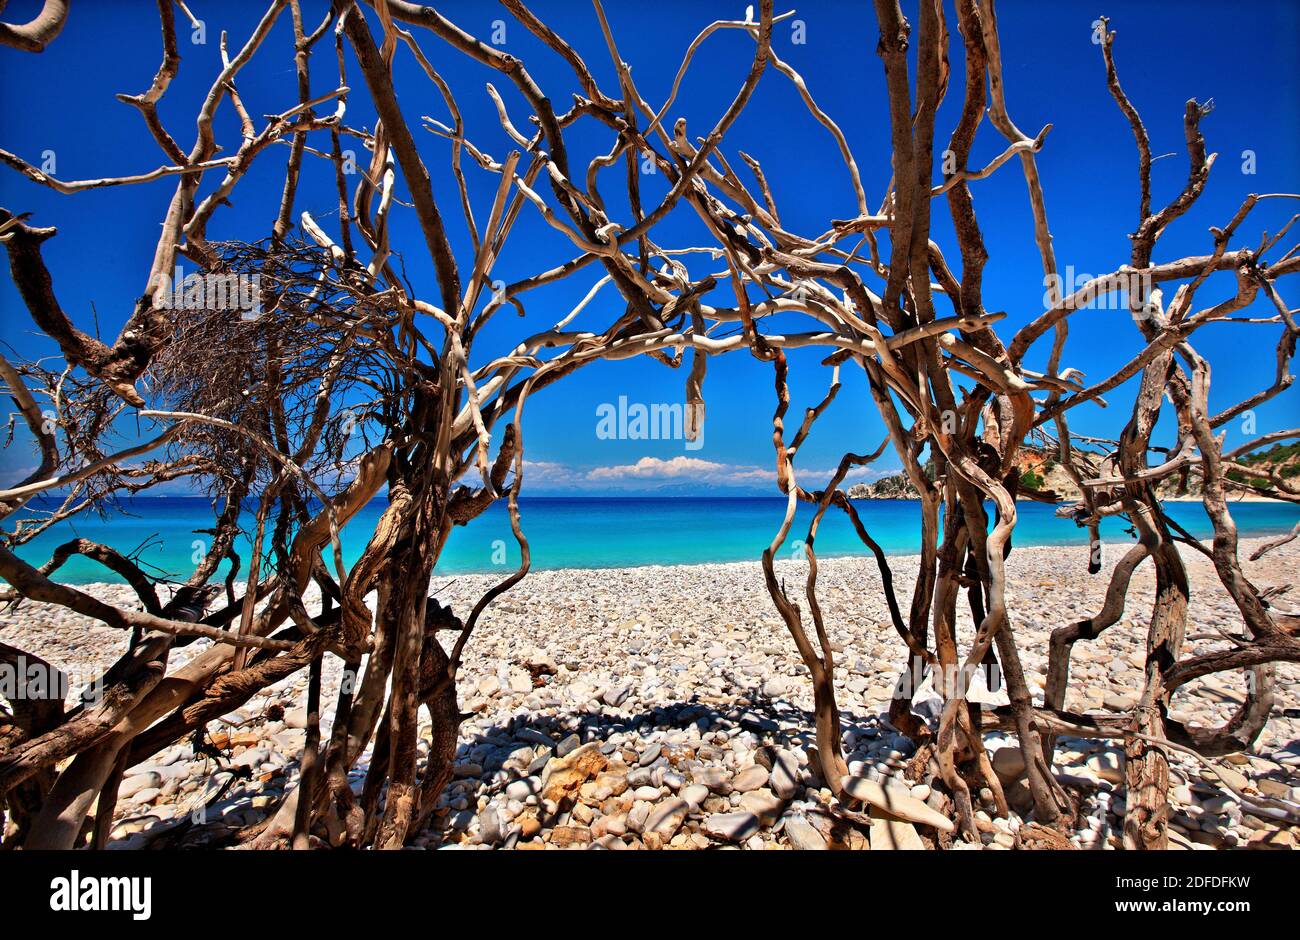 La spiaggia di Gidaki, la spiaggia più bella dell'isola di Ithaca ('Ithaki'), la 'patria' di Ulisse, il Mar Ionio, la Grecia. Foto Stock